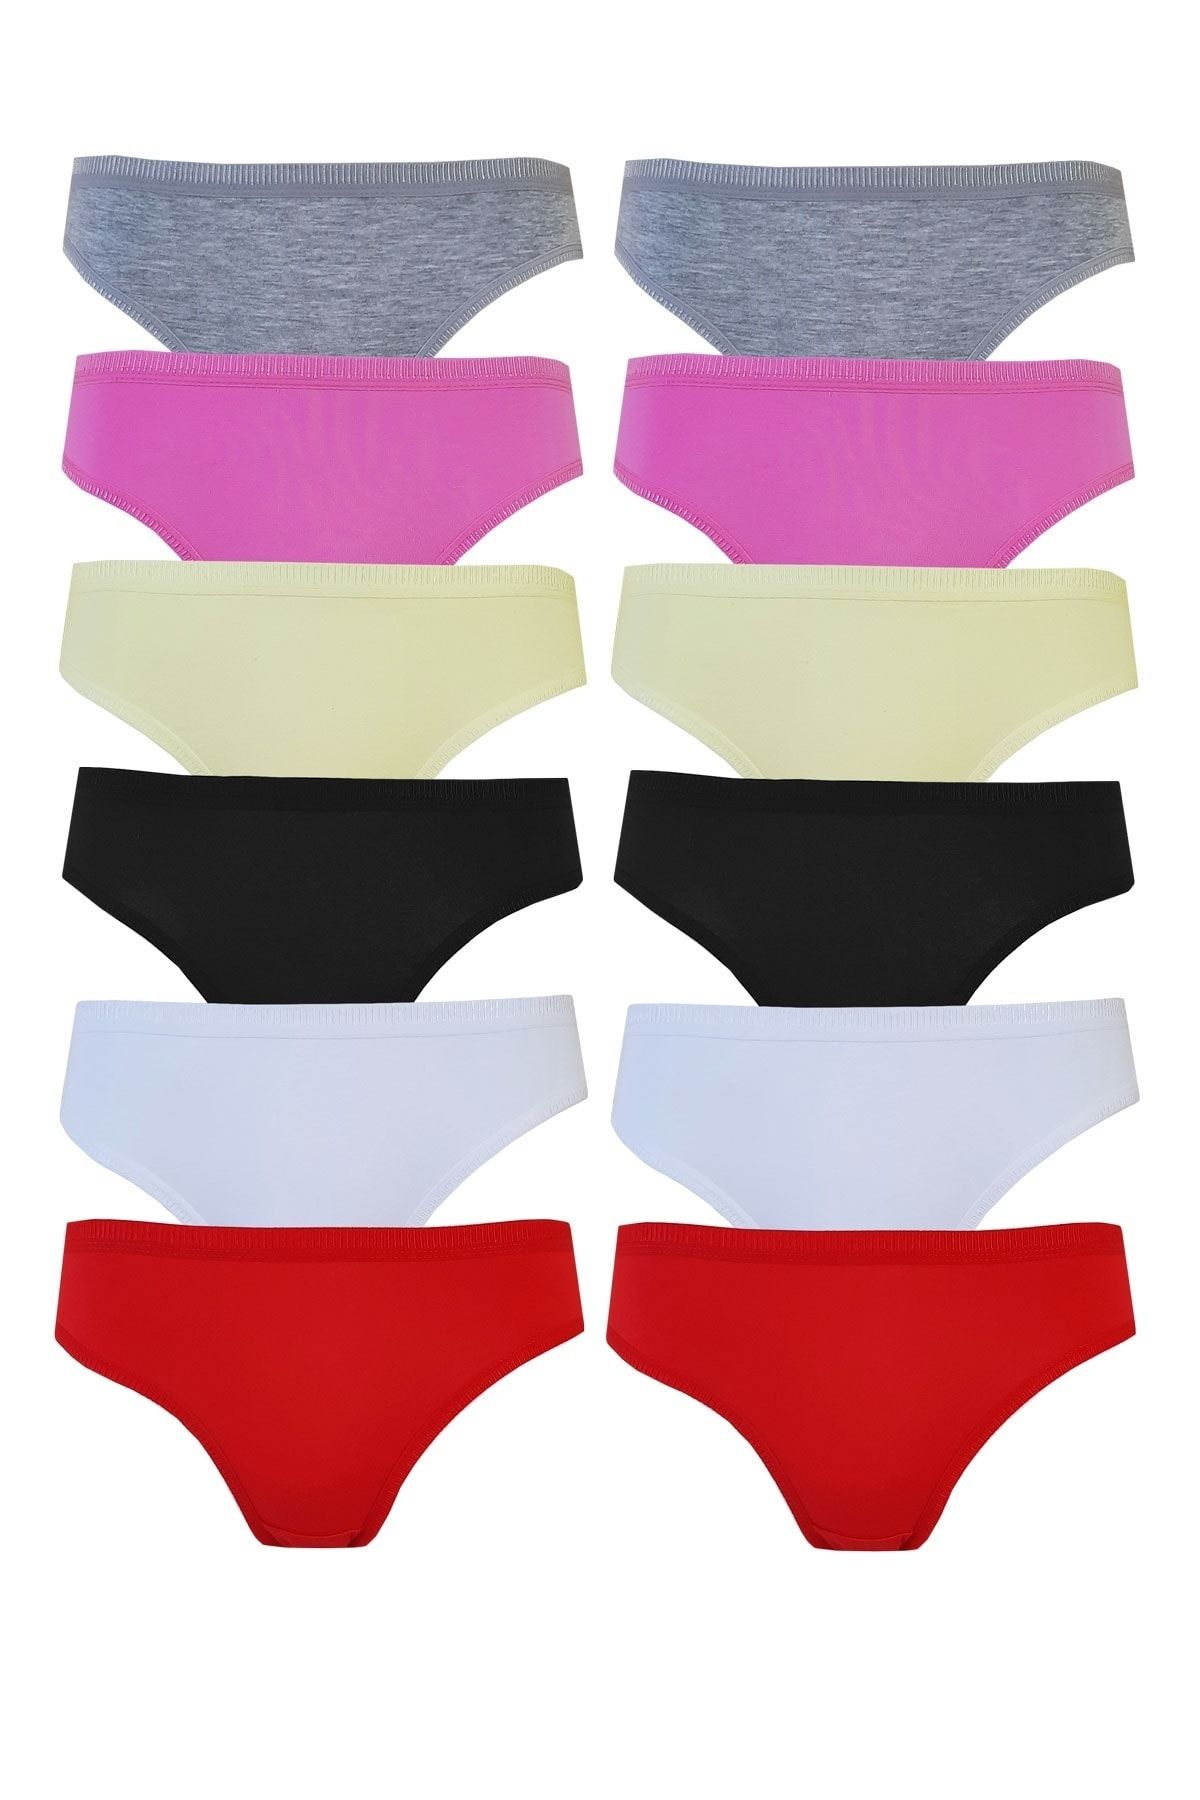 Tutku 12li Kadın Bikini Külot Pamuklu Renkli Iç Çamaşırı Nevra